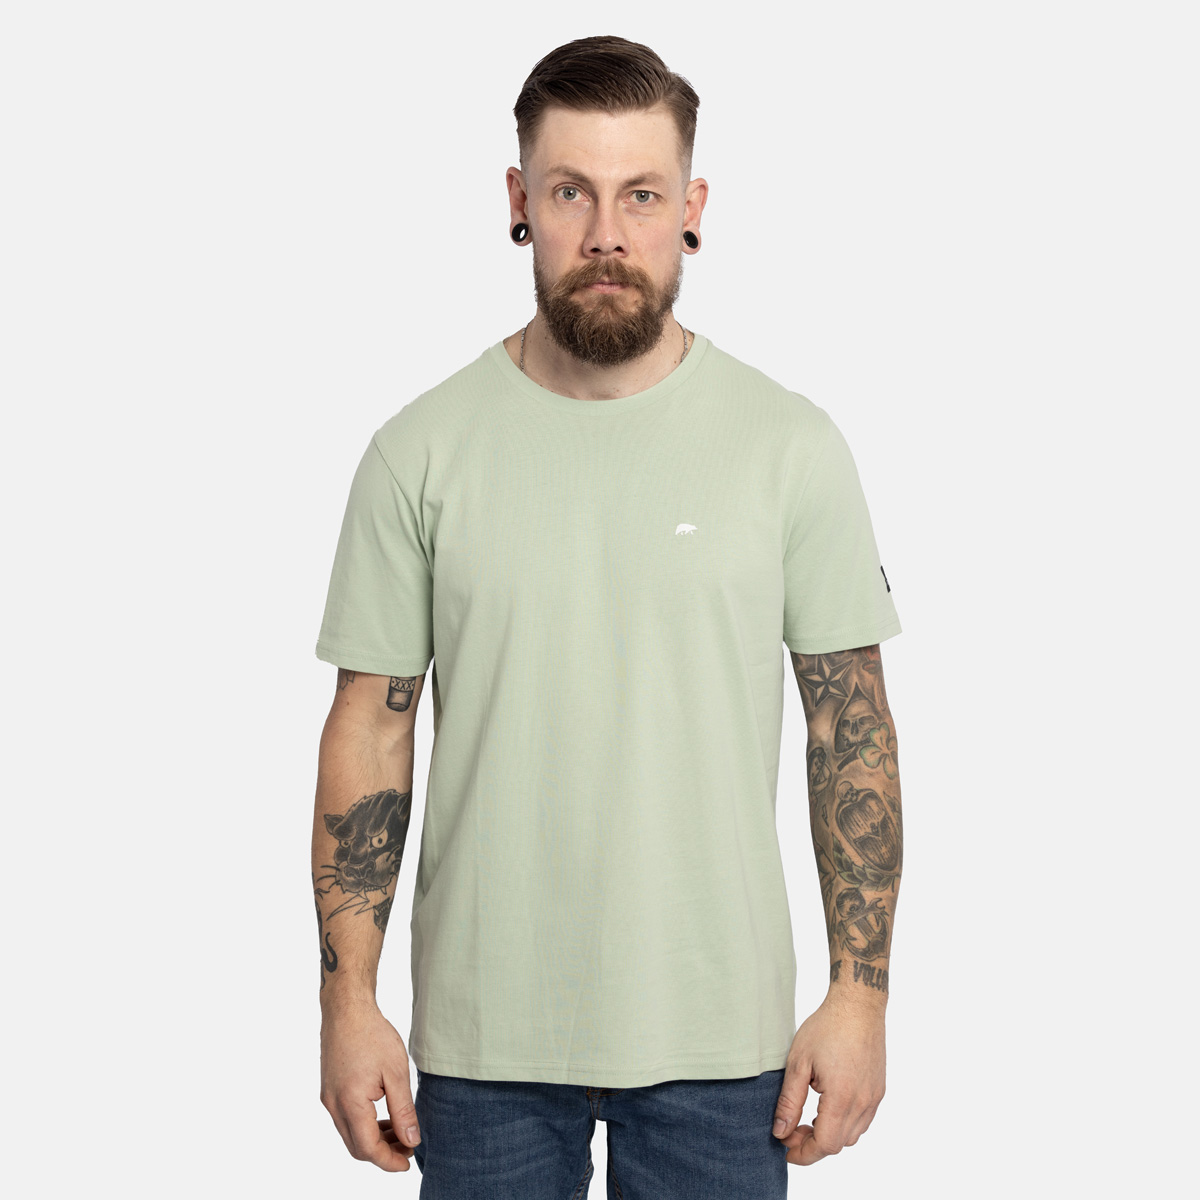 FORSBERG T-Shirt mit kleinem Gummi-Patch - 4